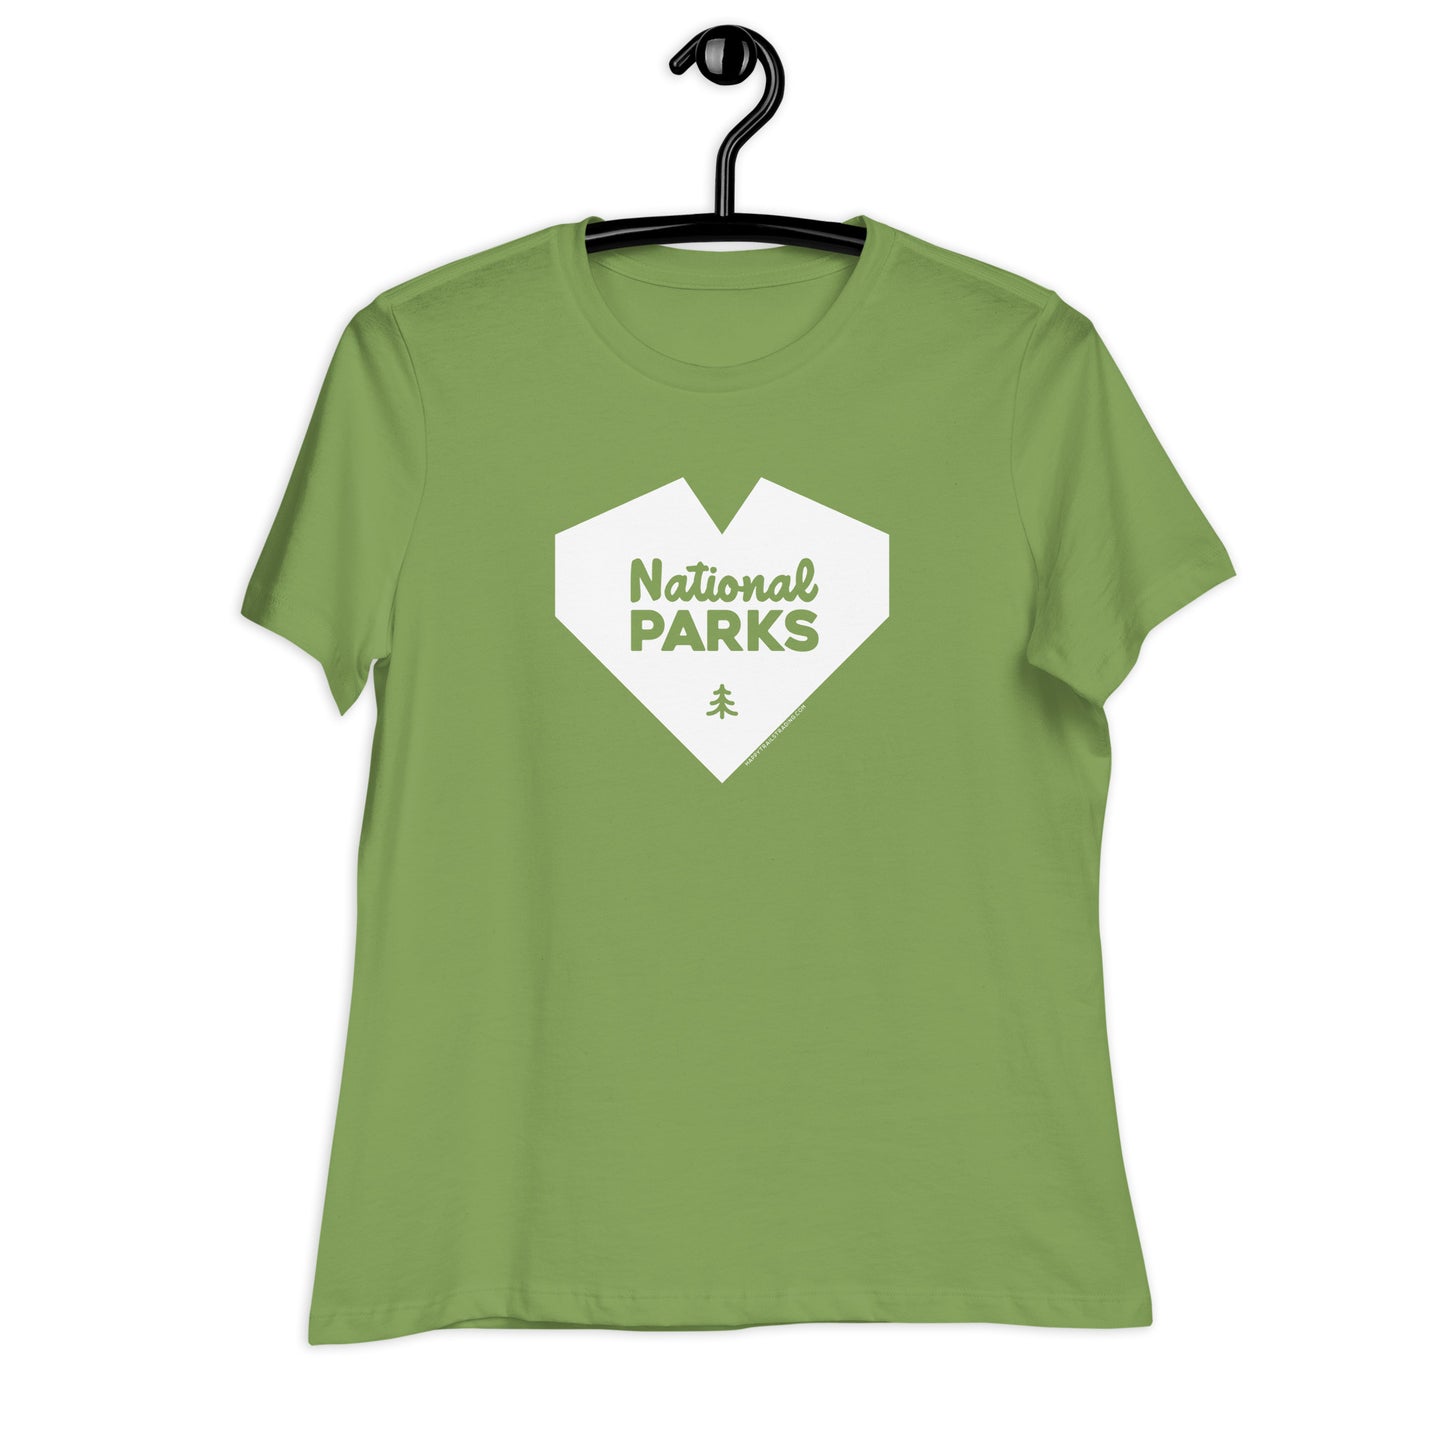 National Park Love - Women's Relaxed T-Shirt